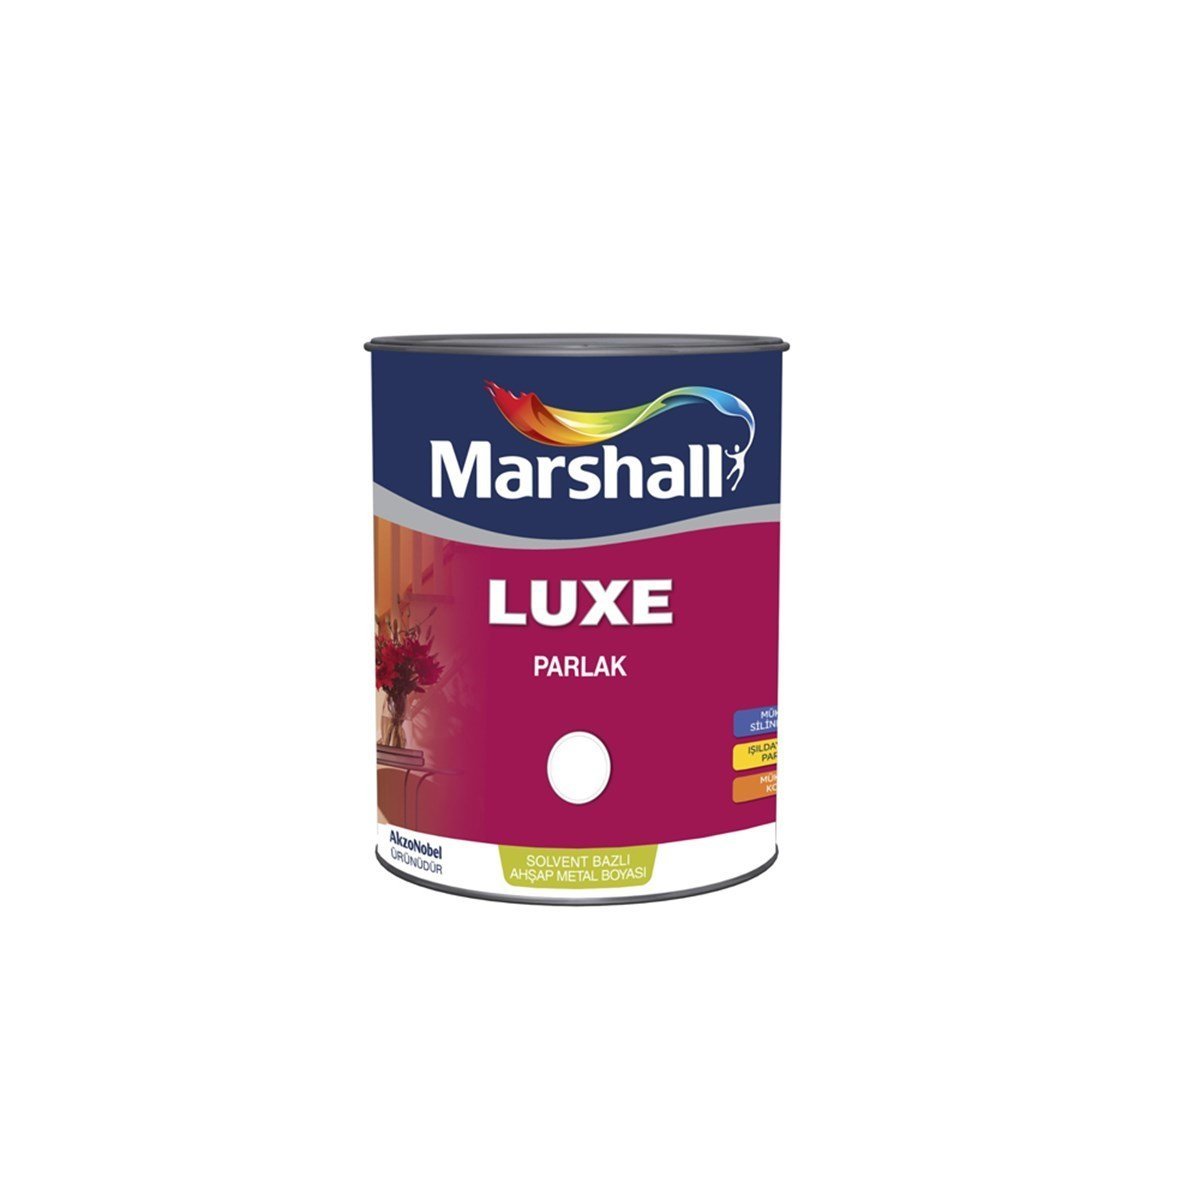 Marshall Luxe Parlak Sentetik Yağlı Boya Ral Renkleri